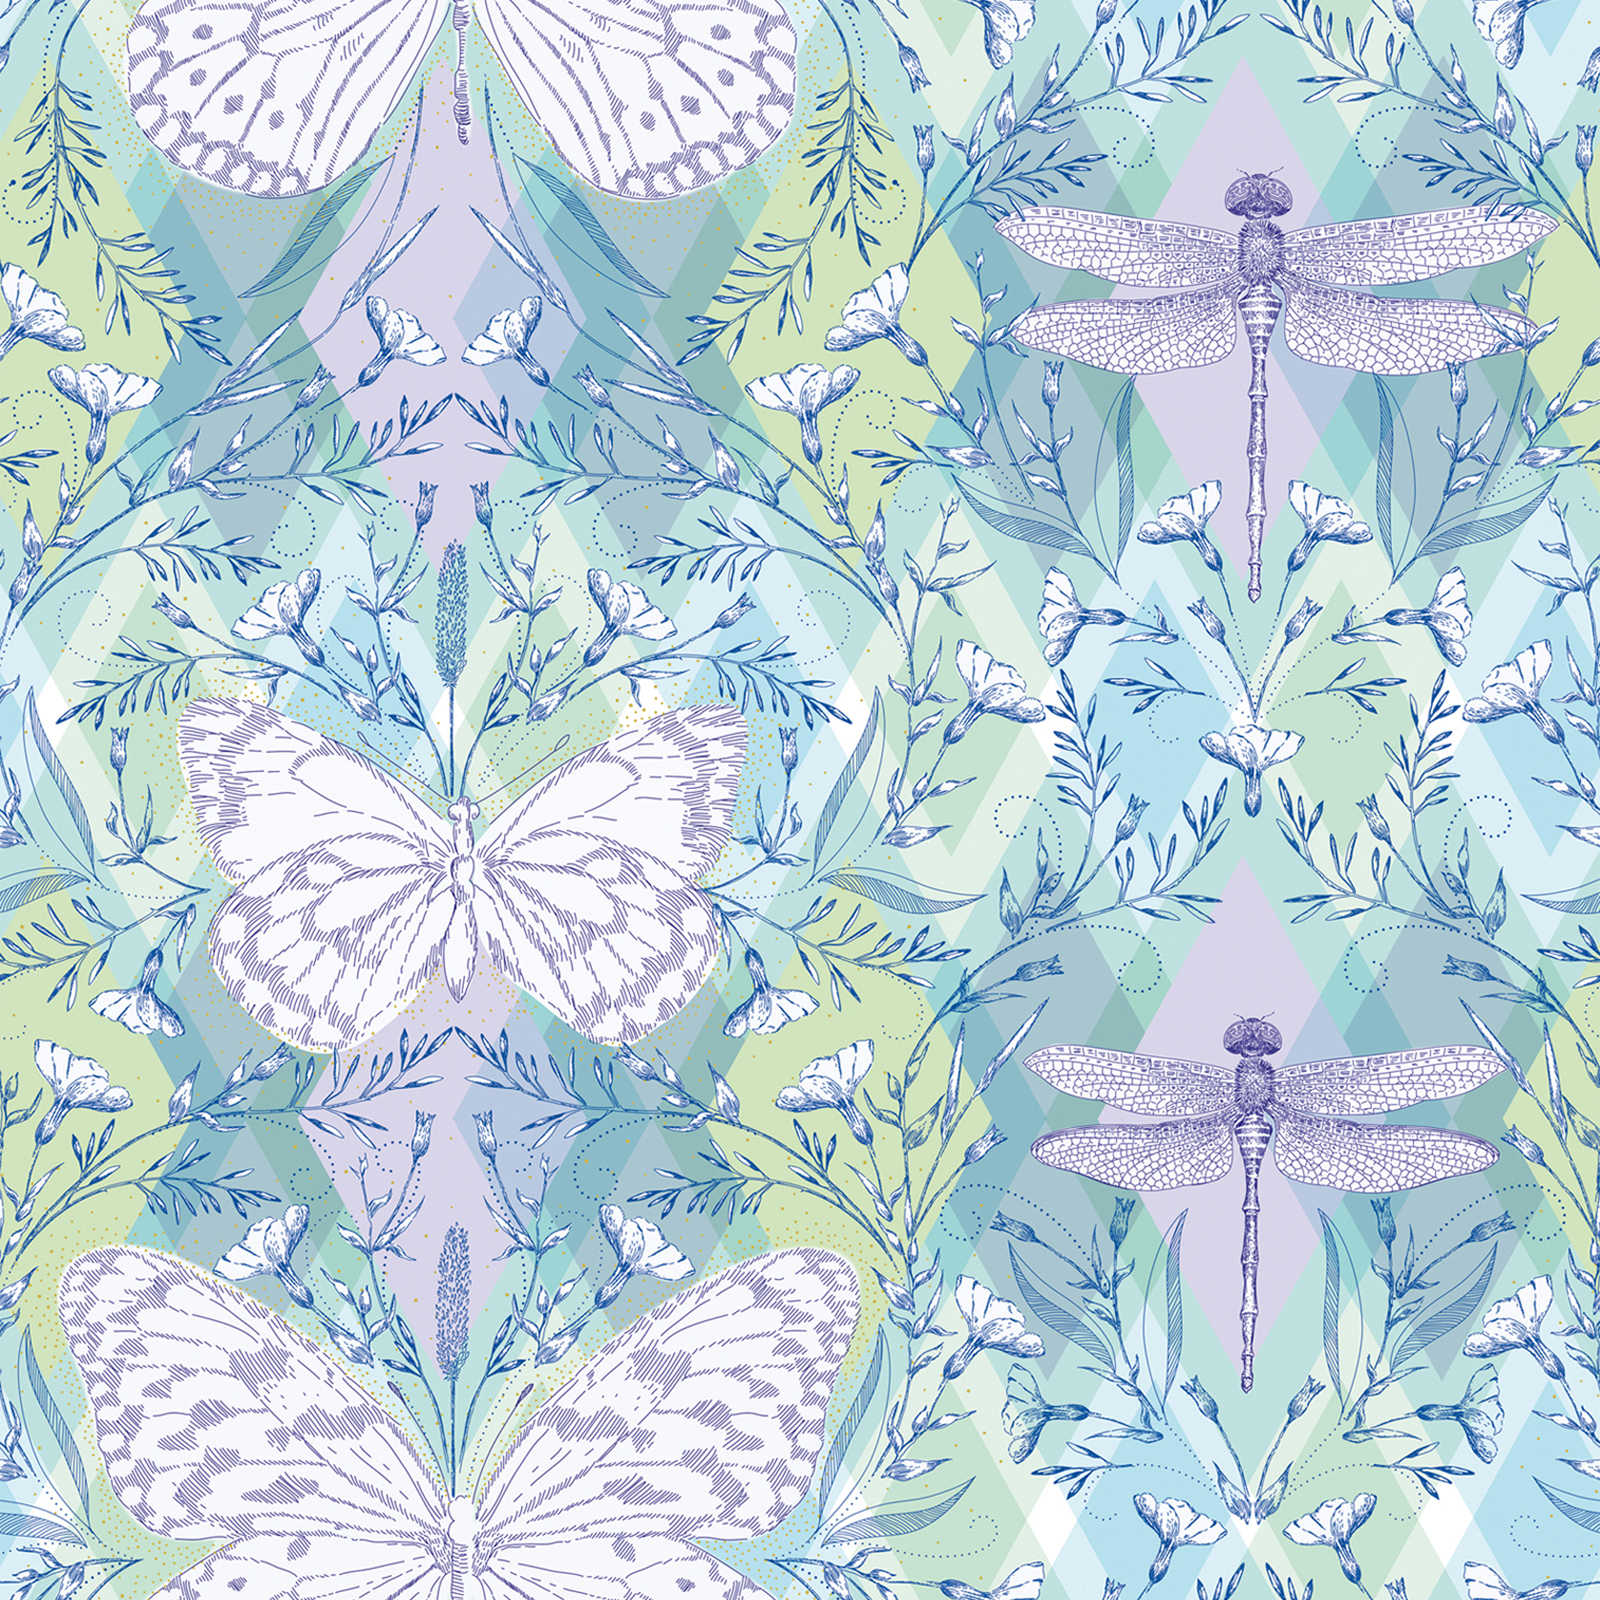 Ruitjespatroon behang met vlinders en libellen - veelkleurig, groen, paars
